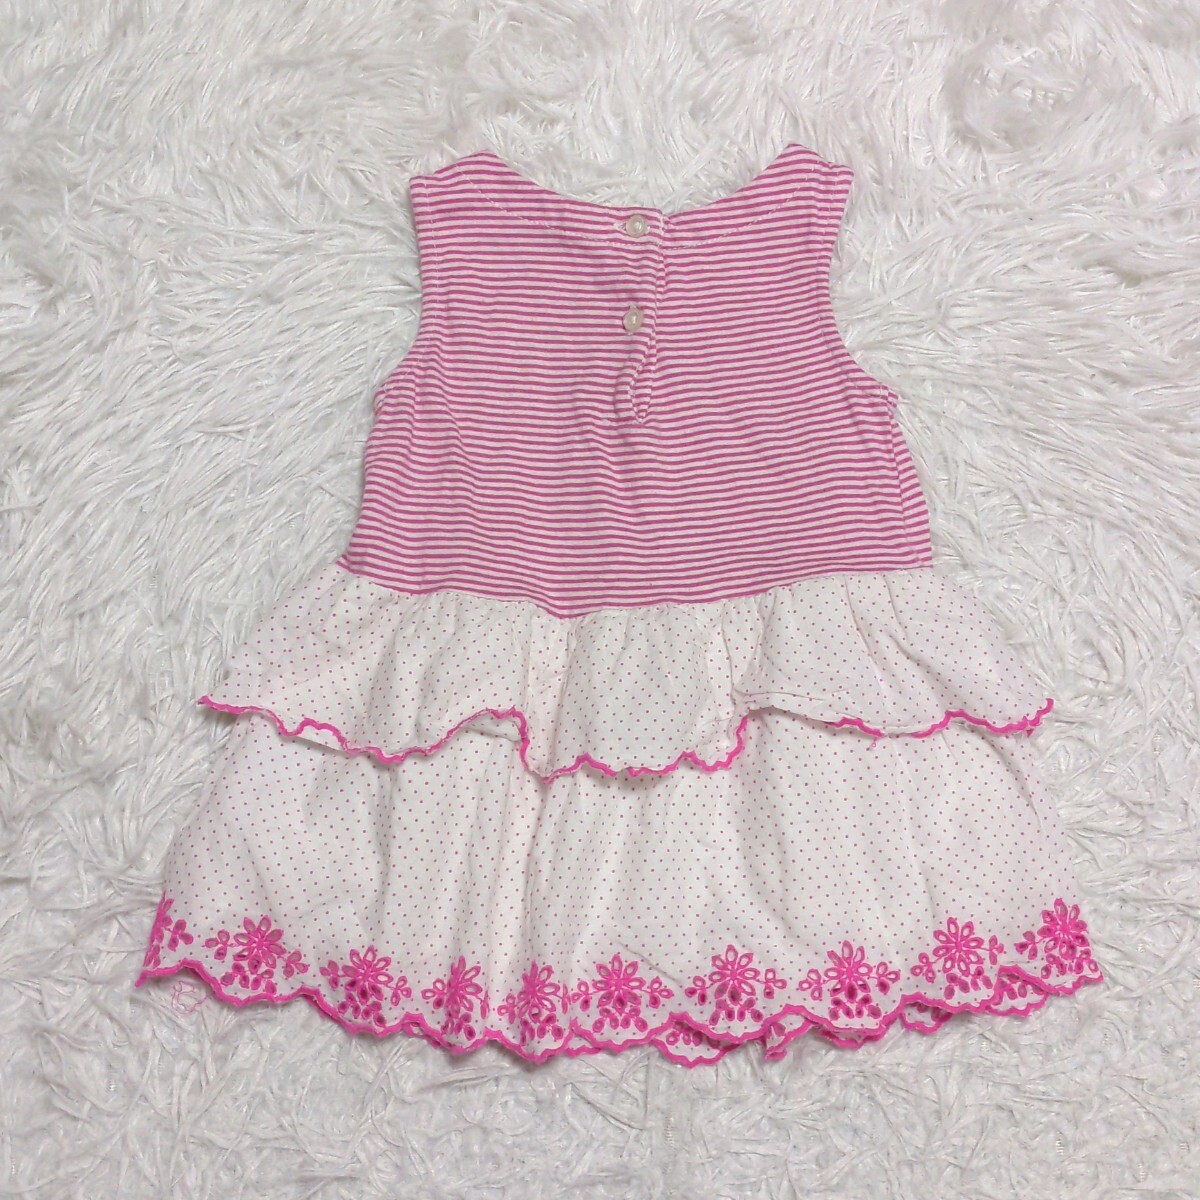 【送料無料】babygap ベビーギャップ ノースリーブ ワンピース 80cm ピンク ベビー 子供服の画像2